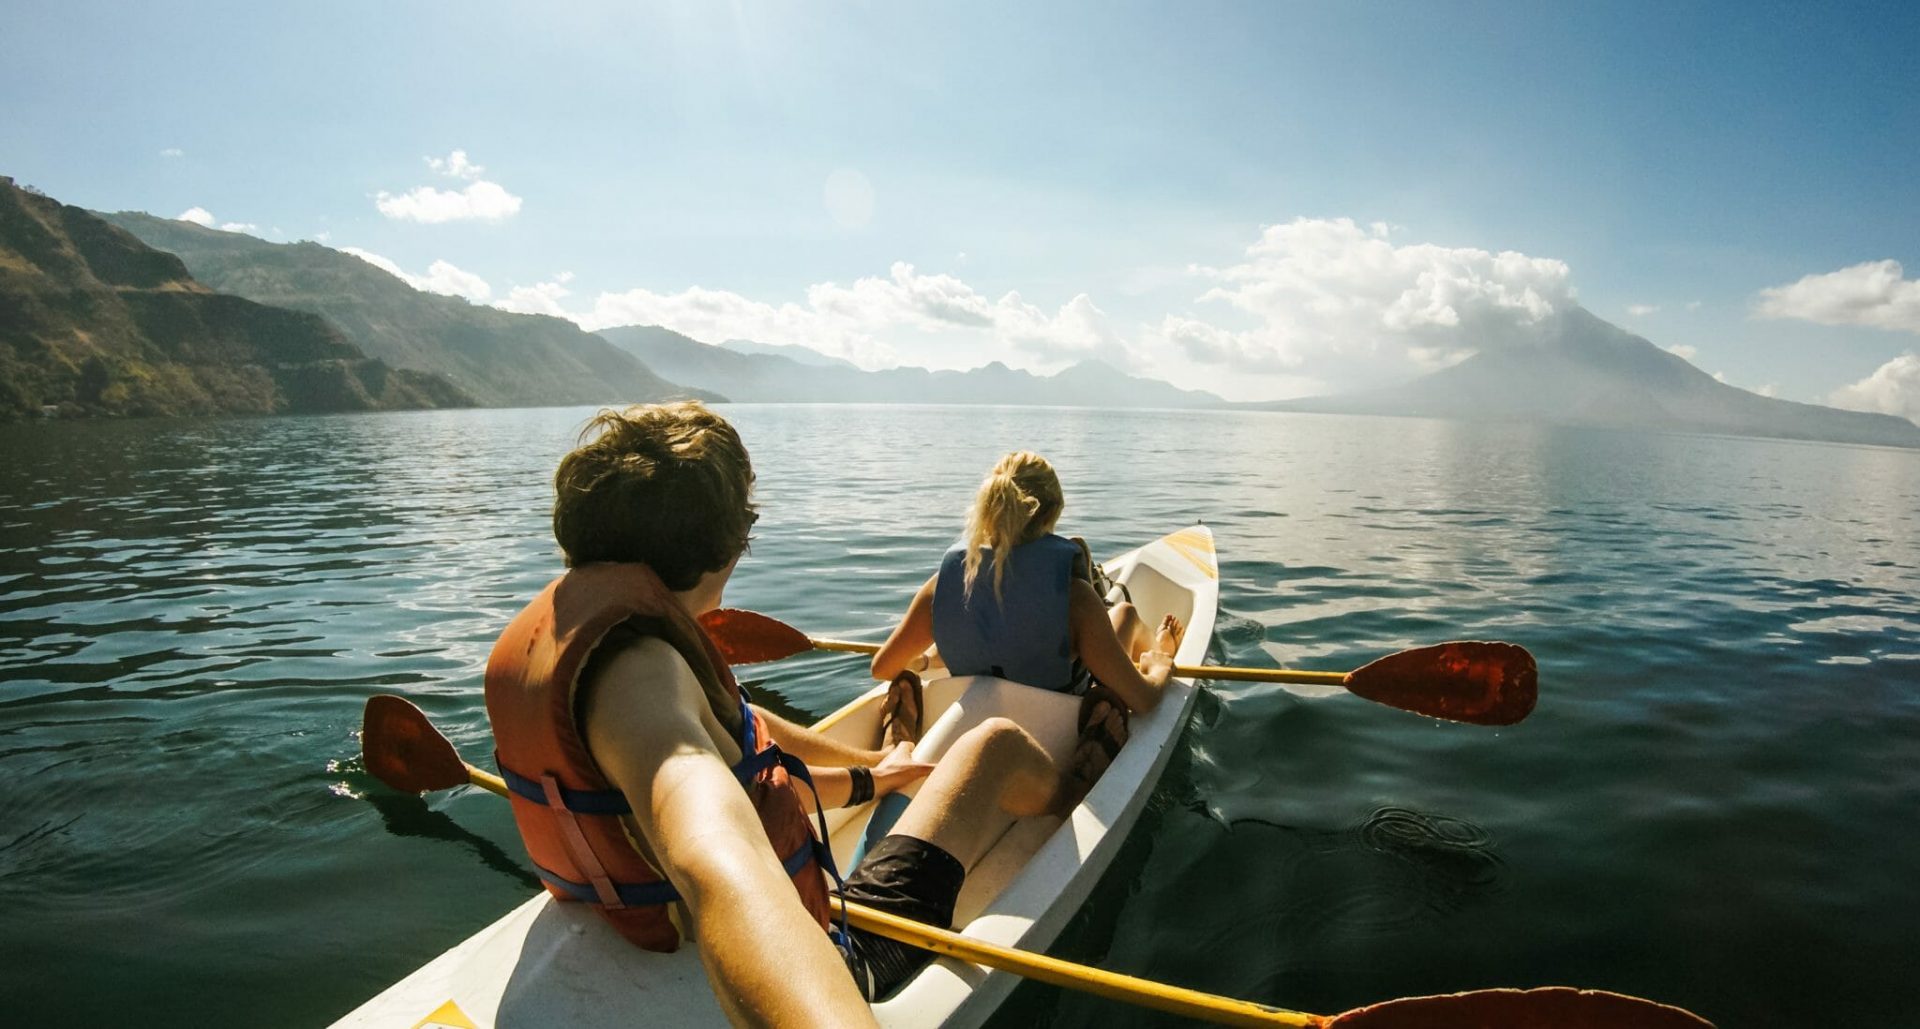 Symbolbild Urlaub Ausflüge buchen, im Foto: 2 Menschen fahren in einem Boot, im Hintergrund Berge